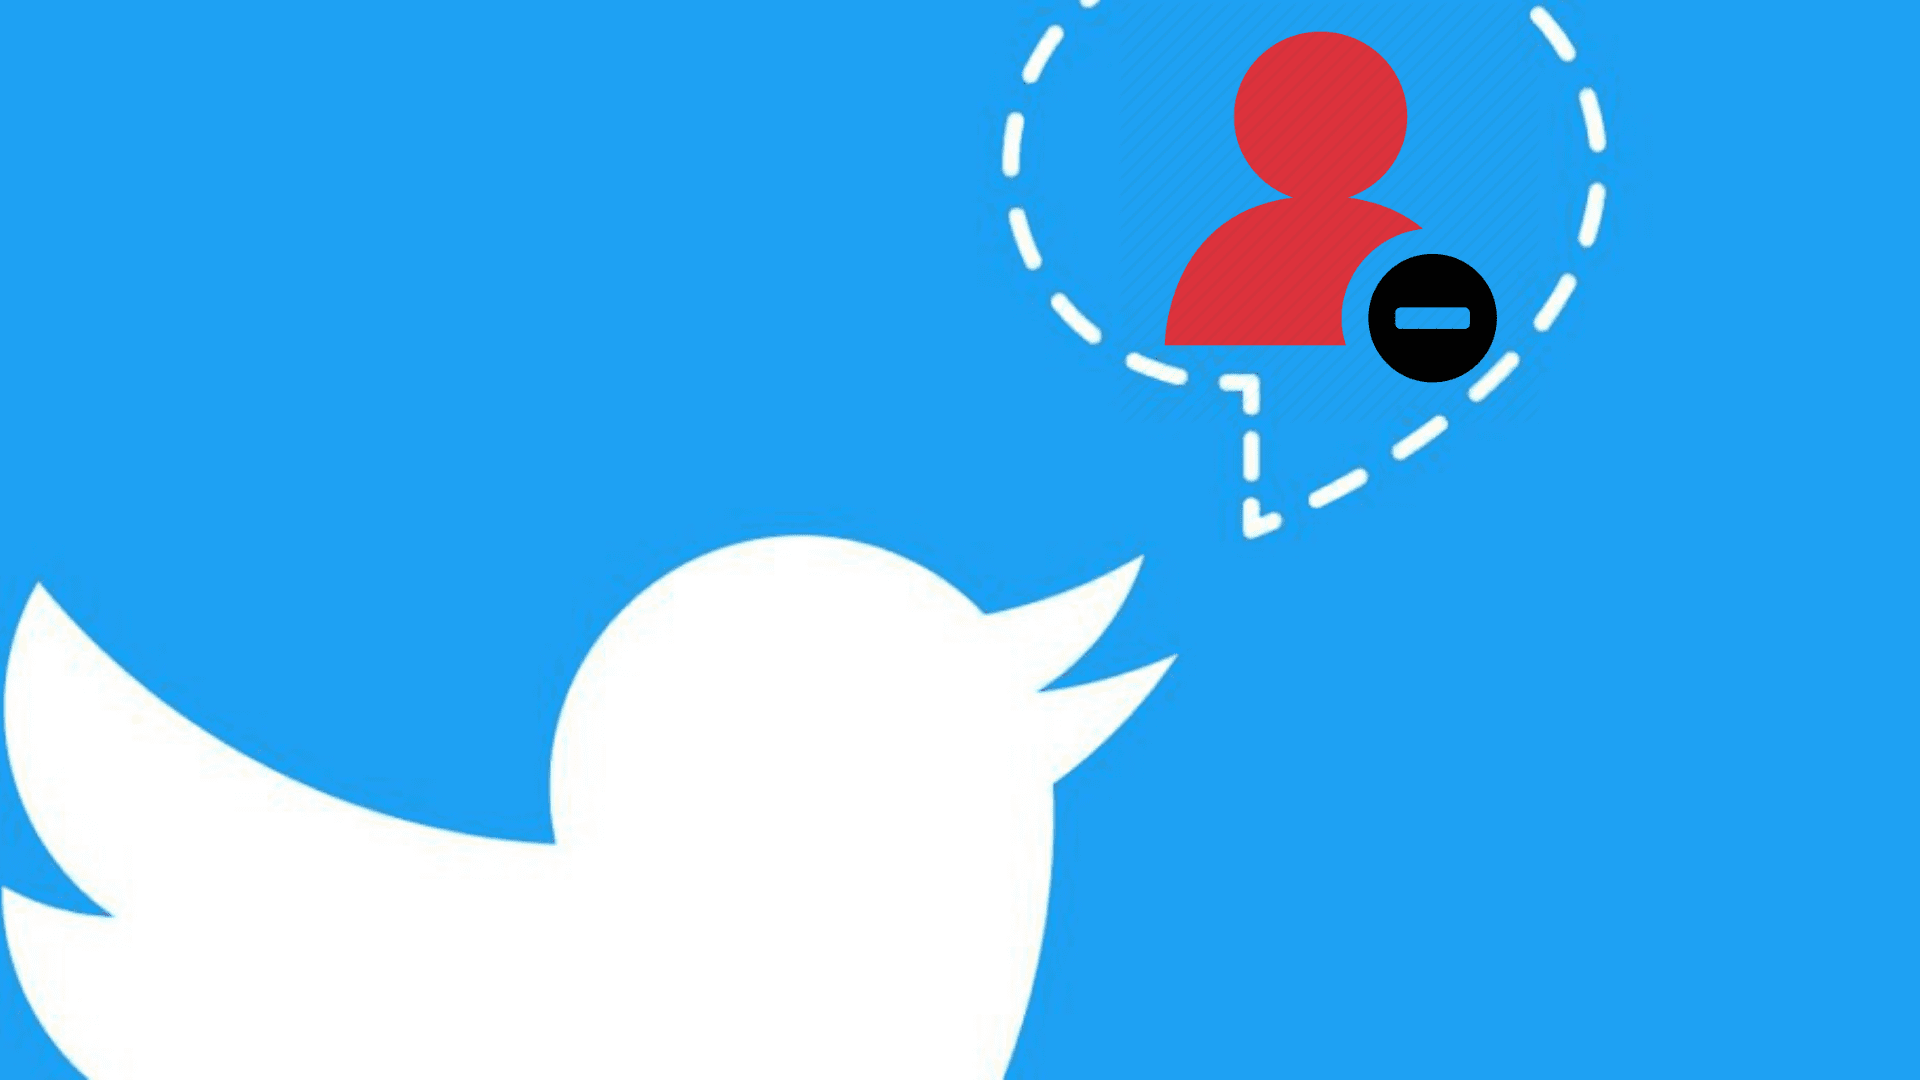 Twitter anunció que lanzará un "modo seguro" para frenar el odio en las redes sociales